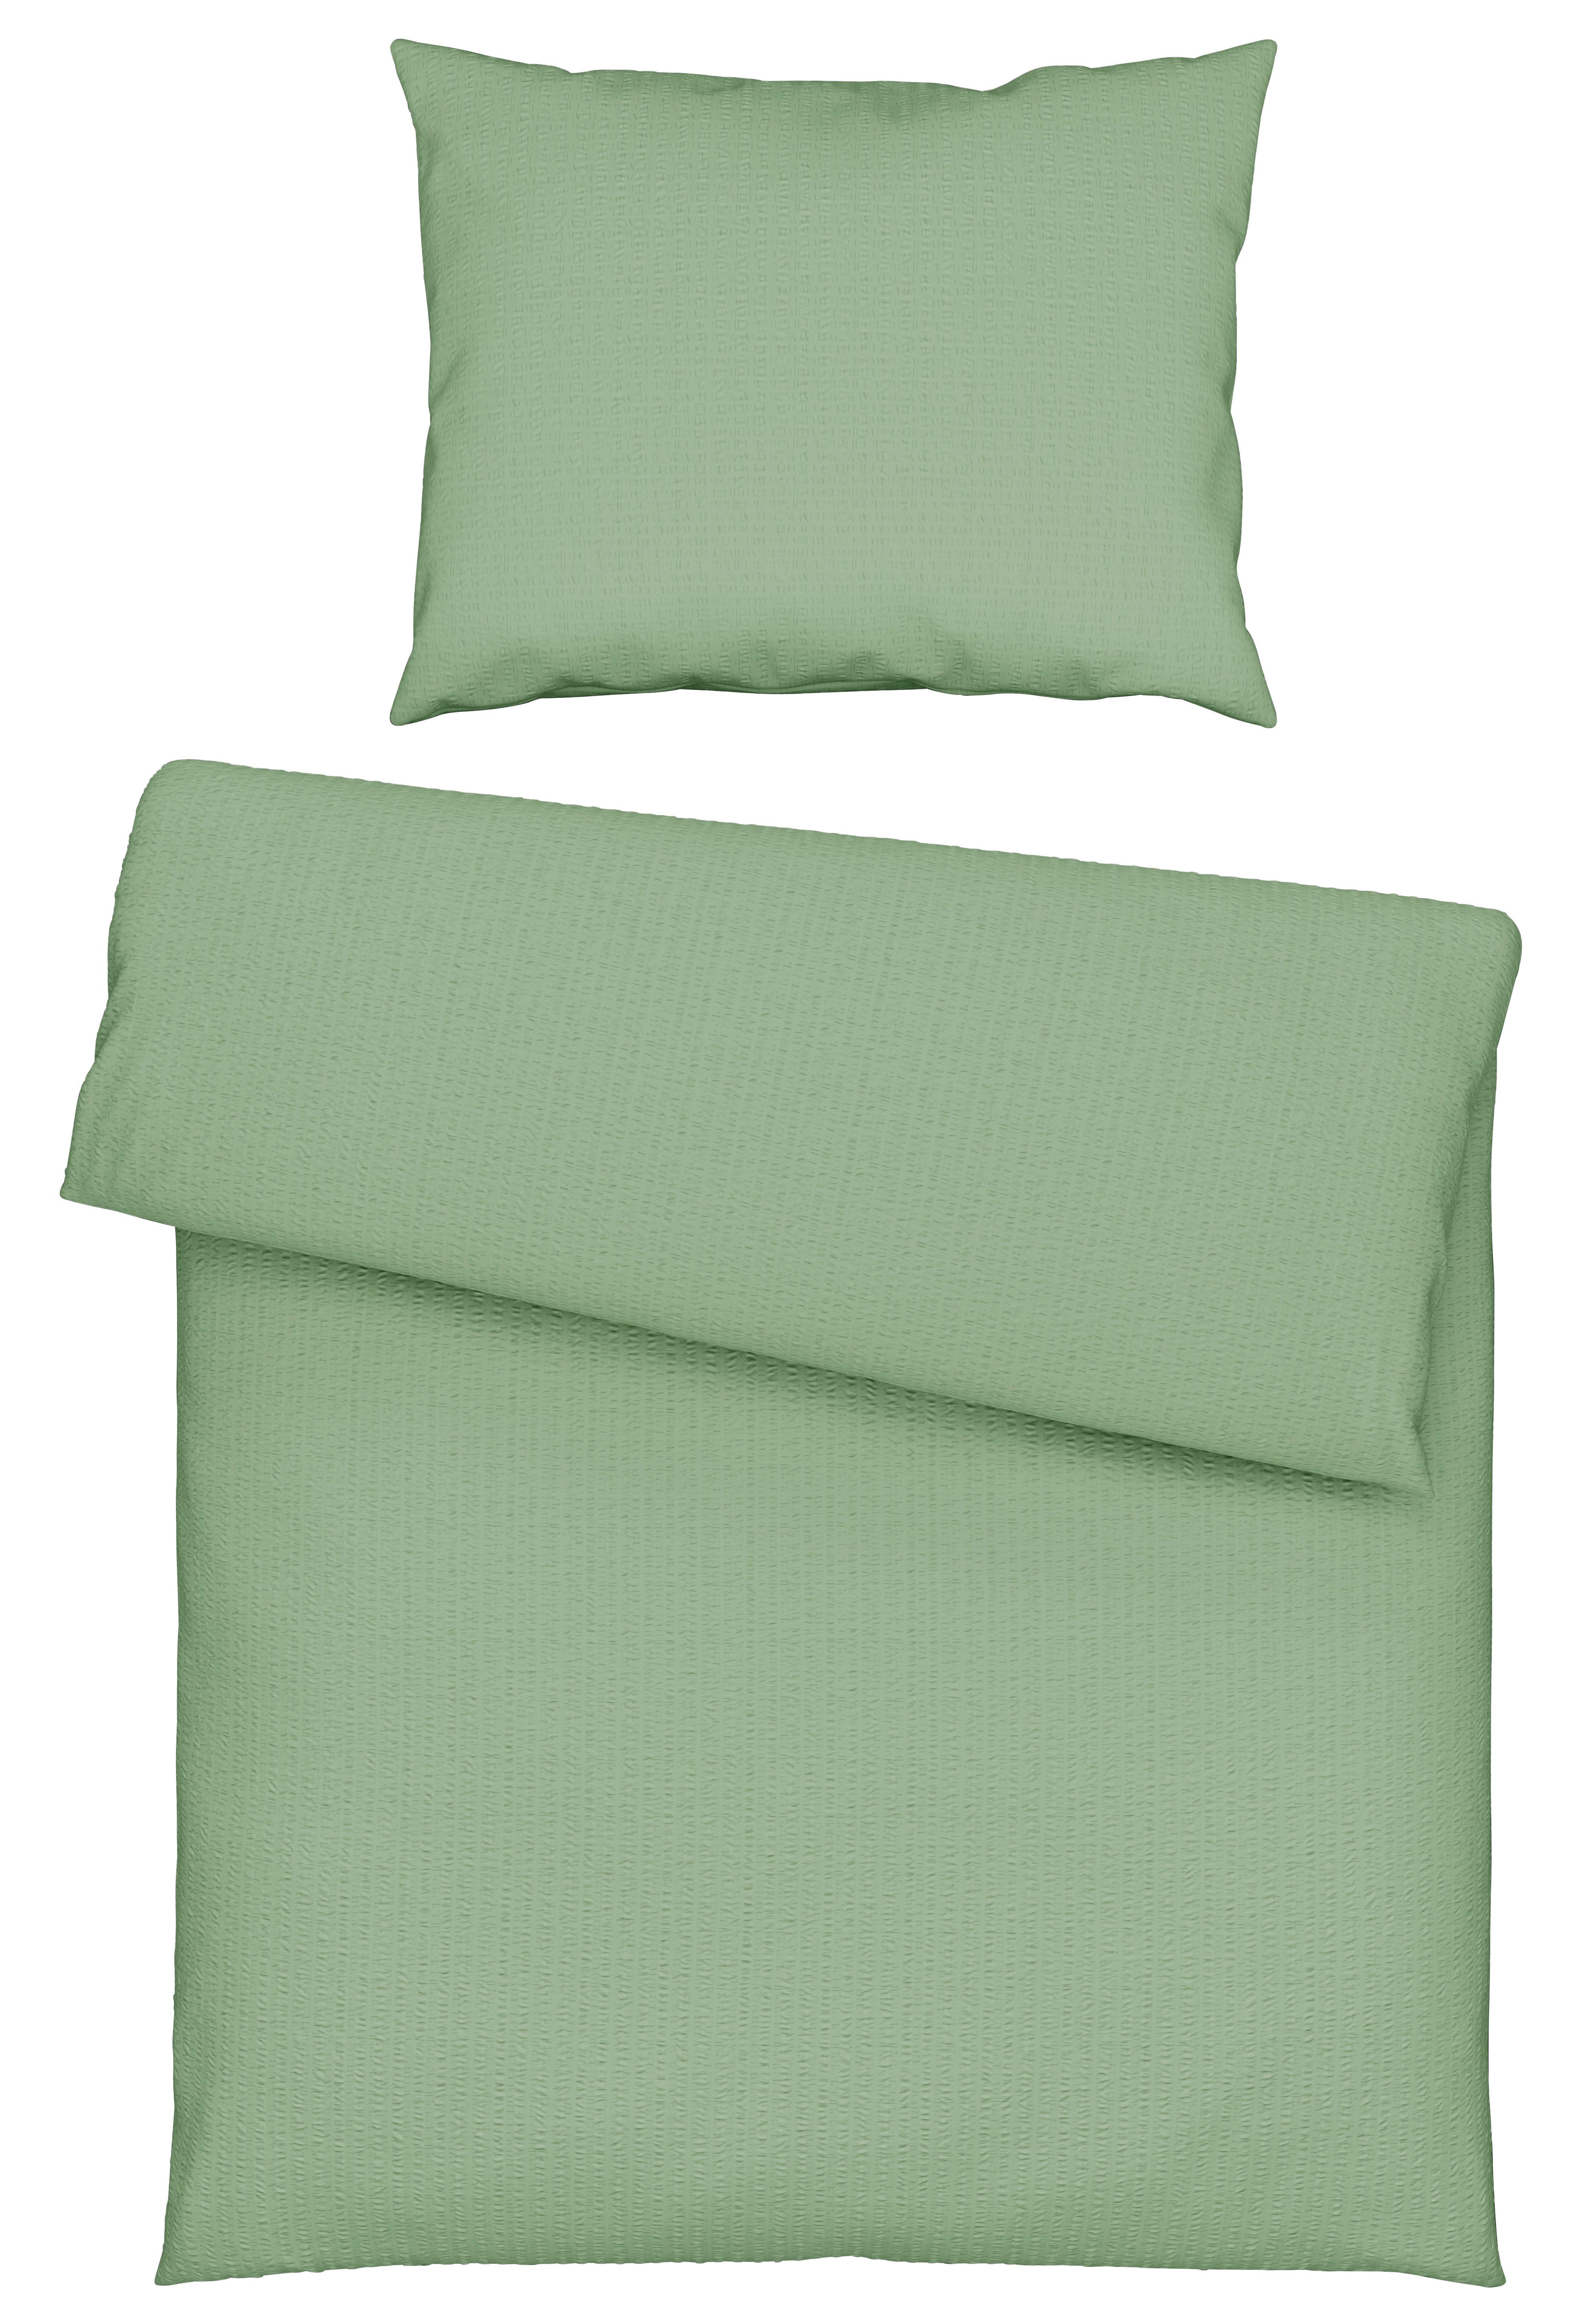 Povlečení Gisi, 140/200cm, Zelená - zelená, Konvenční, textil (140/200cm) - Modern Living